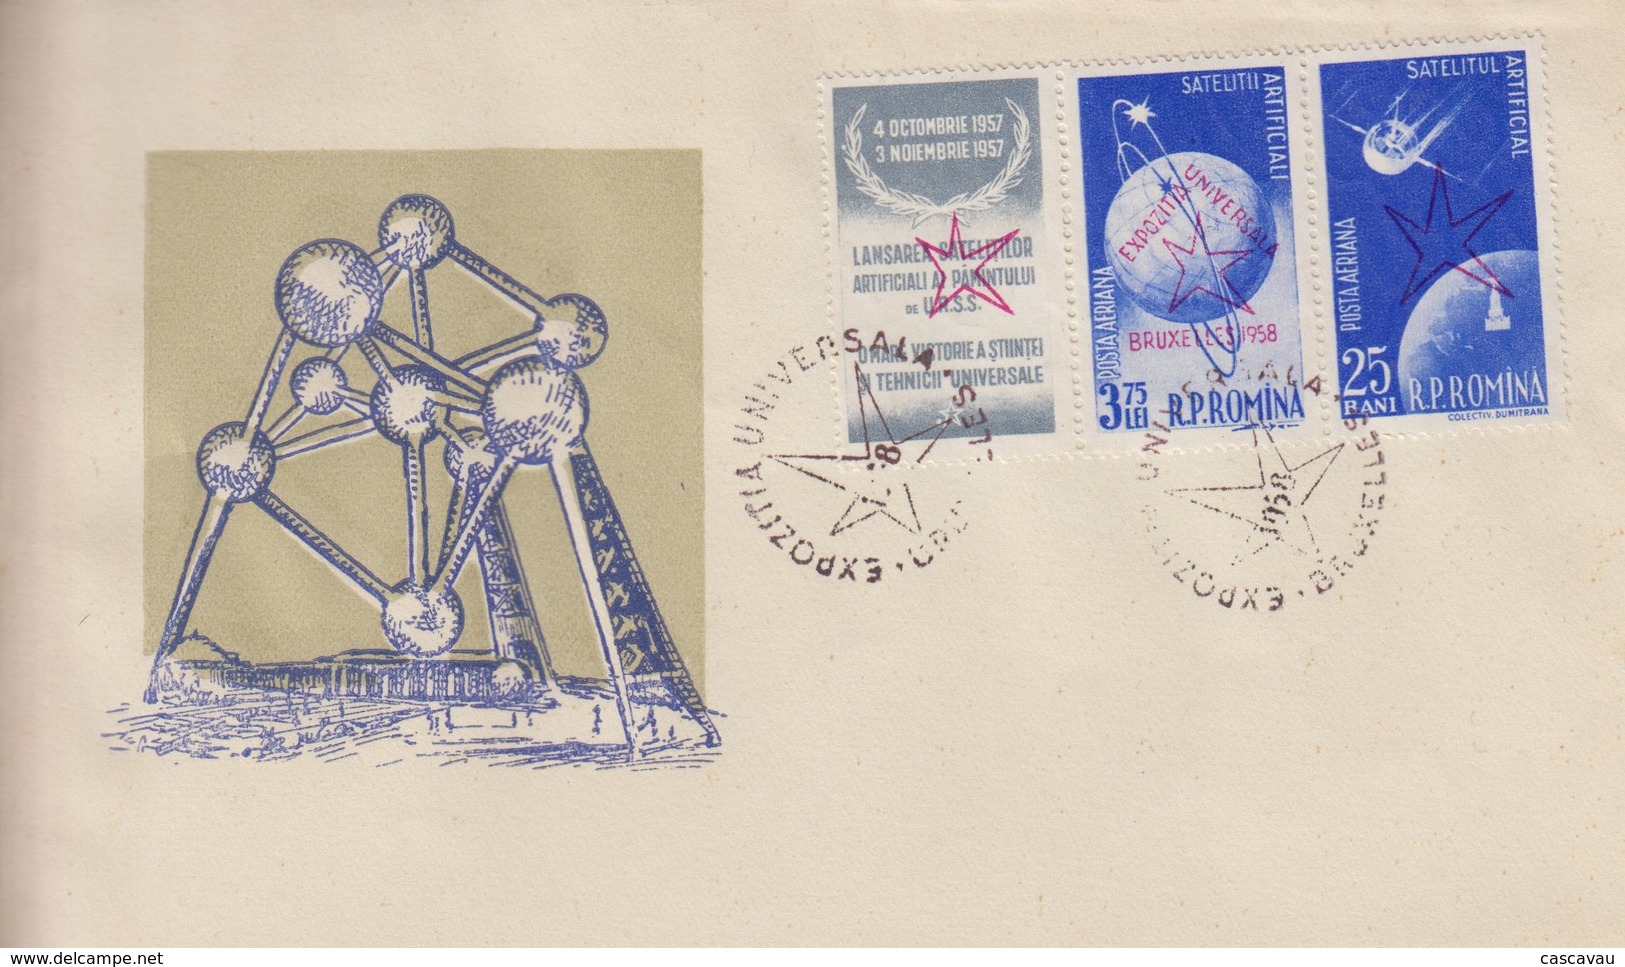 Enveloppe  FDC  1er Jour   ROUMANIE     Exposition  Universelle  BRUXELLES   1958 - 1958 – Brüssel (Belgien)